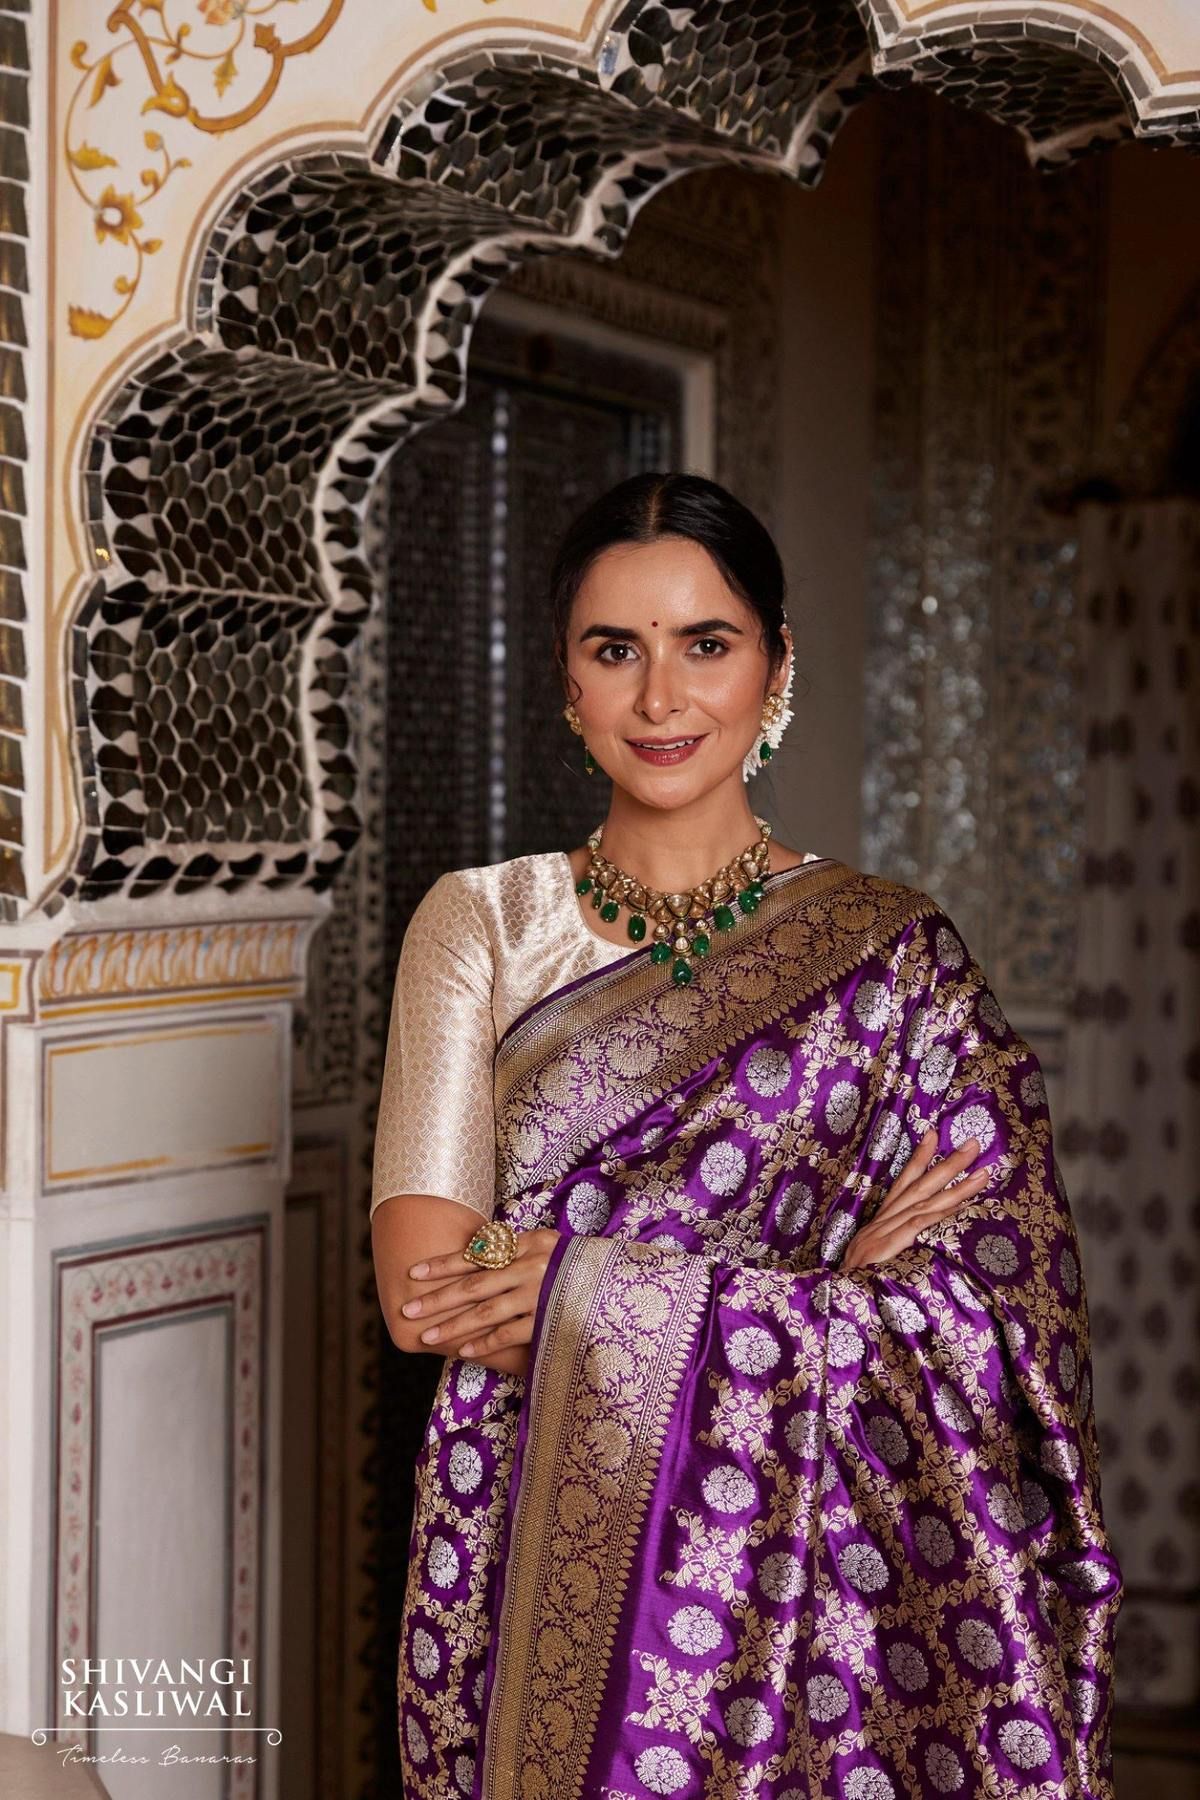 Timeless Elegance: Banarasi Sarees for Opulent Grace